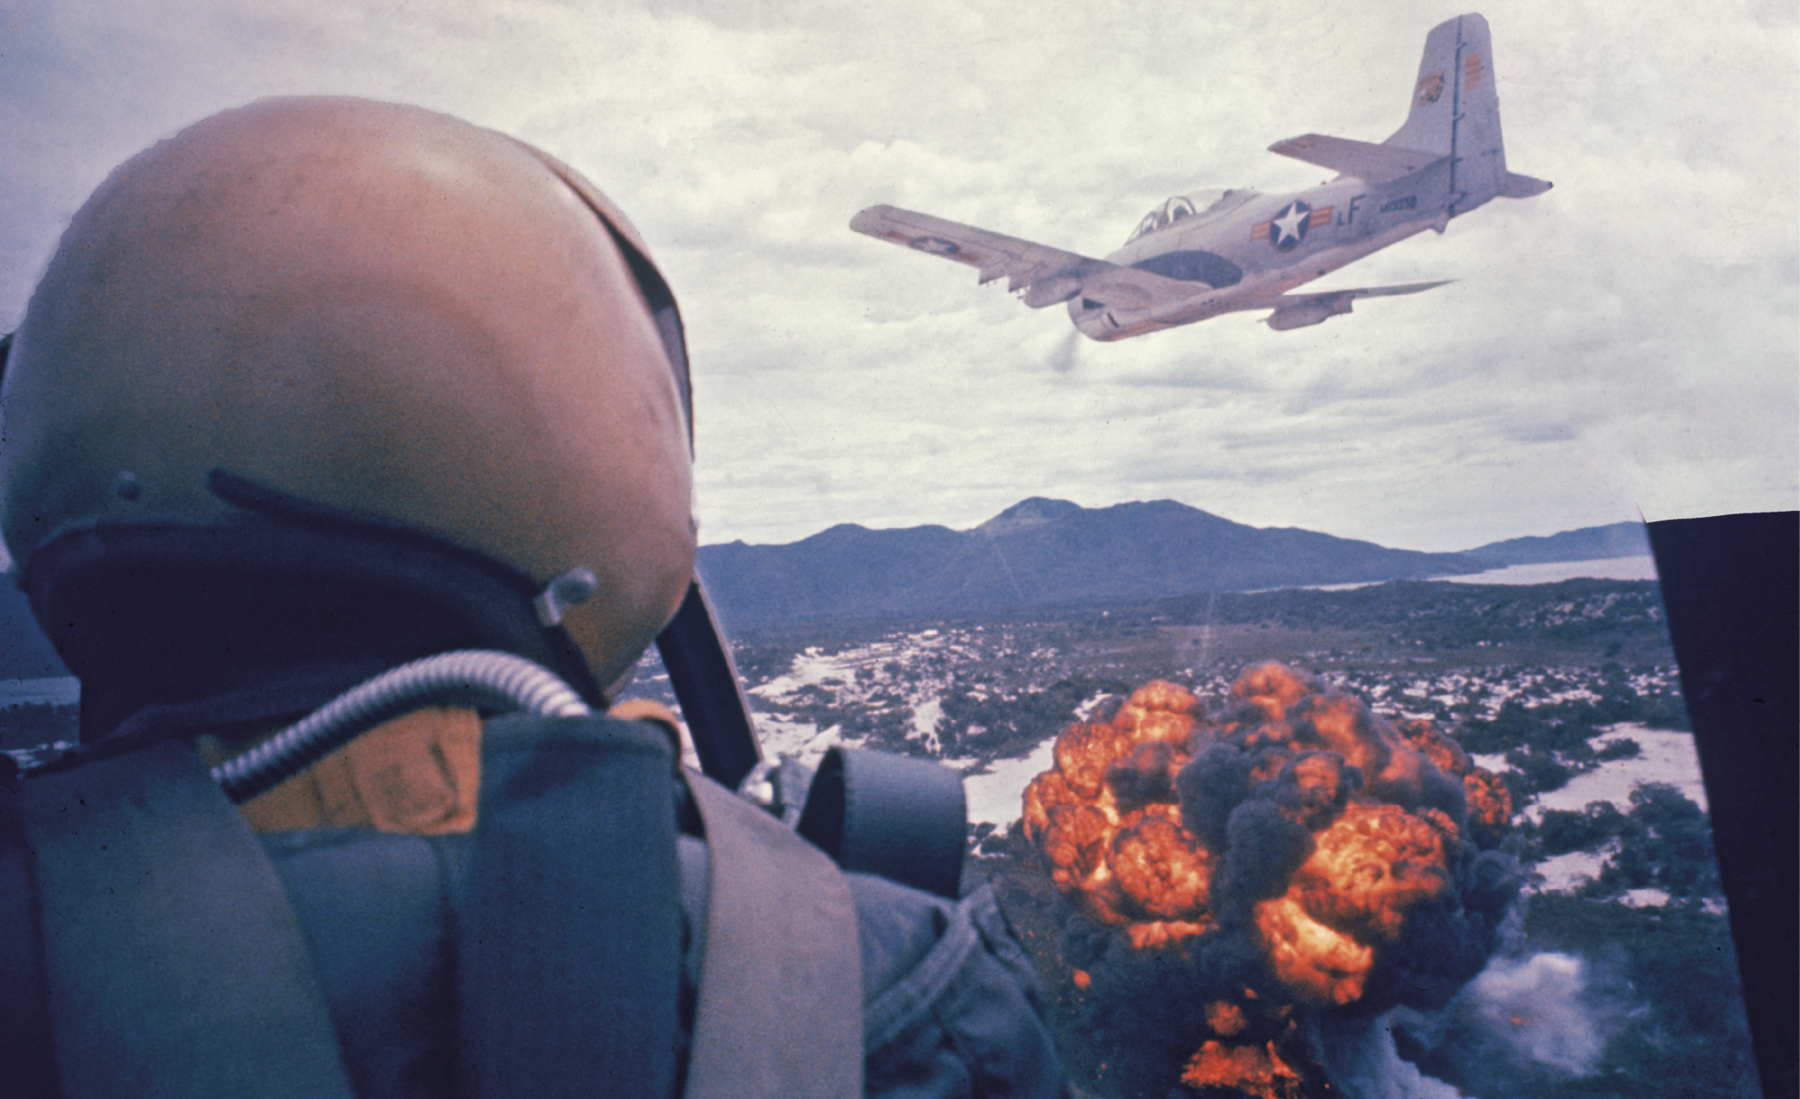 Fotografia. Em primeiro plano, piloto de costas, dentro de um avião militar. Ele está de capacete. Ao fundo, outro avião militar sobrevoa uma área em chamas.